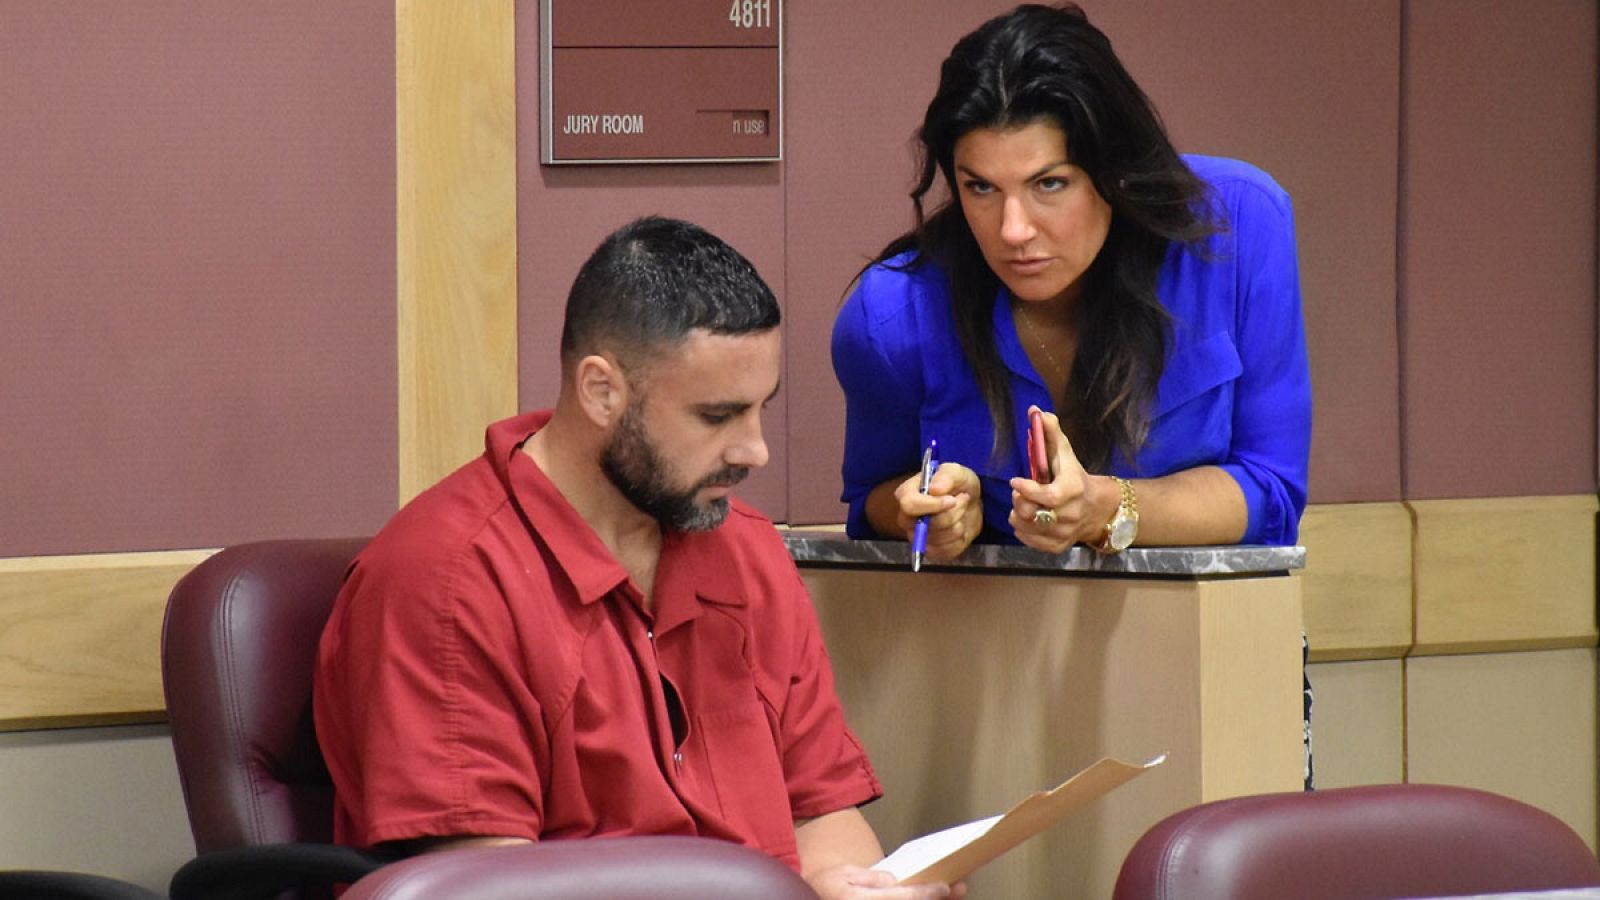 La abogada Tarlika Navarro habla con su cliente, el español Pablo Ibar el miércoles 17 de agosto de 2016, durante una audiencia en la corte federal del Condado de Broward en Fourt Lauderdale, Florida (EE.UU.).